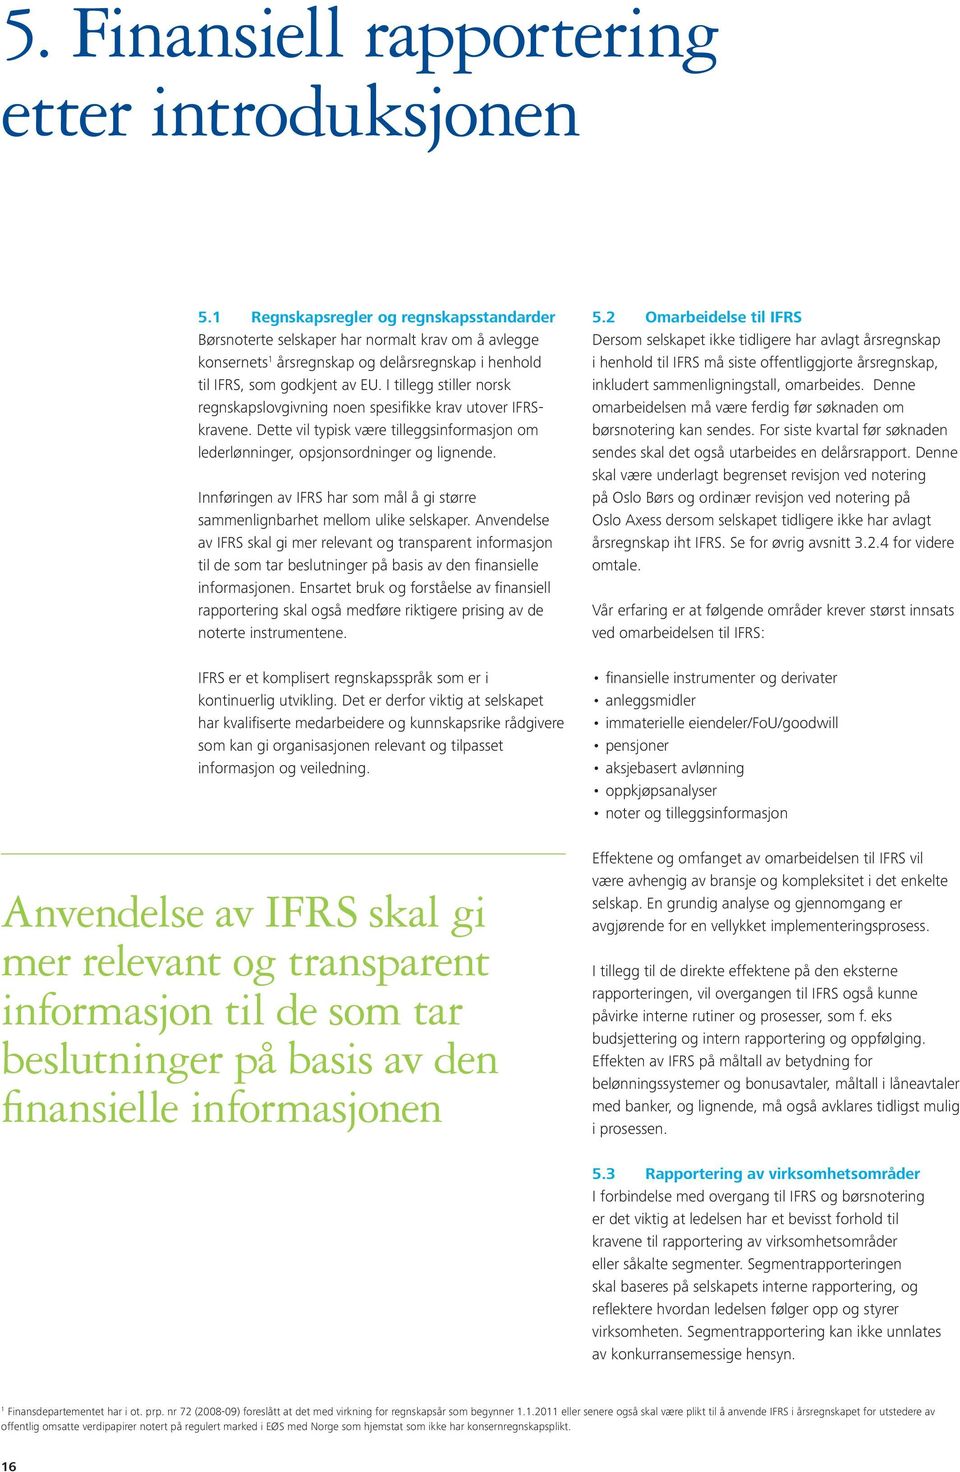 I tillegg stiller norsk regnskapslovgivning noen spesifikke krav utover IFRSkravene. Dette vil typisk være tilleggsinformasjon om lederlønninger, opsjonsordninger og lignende.